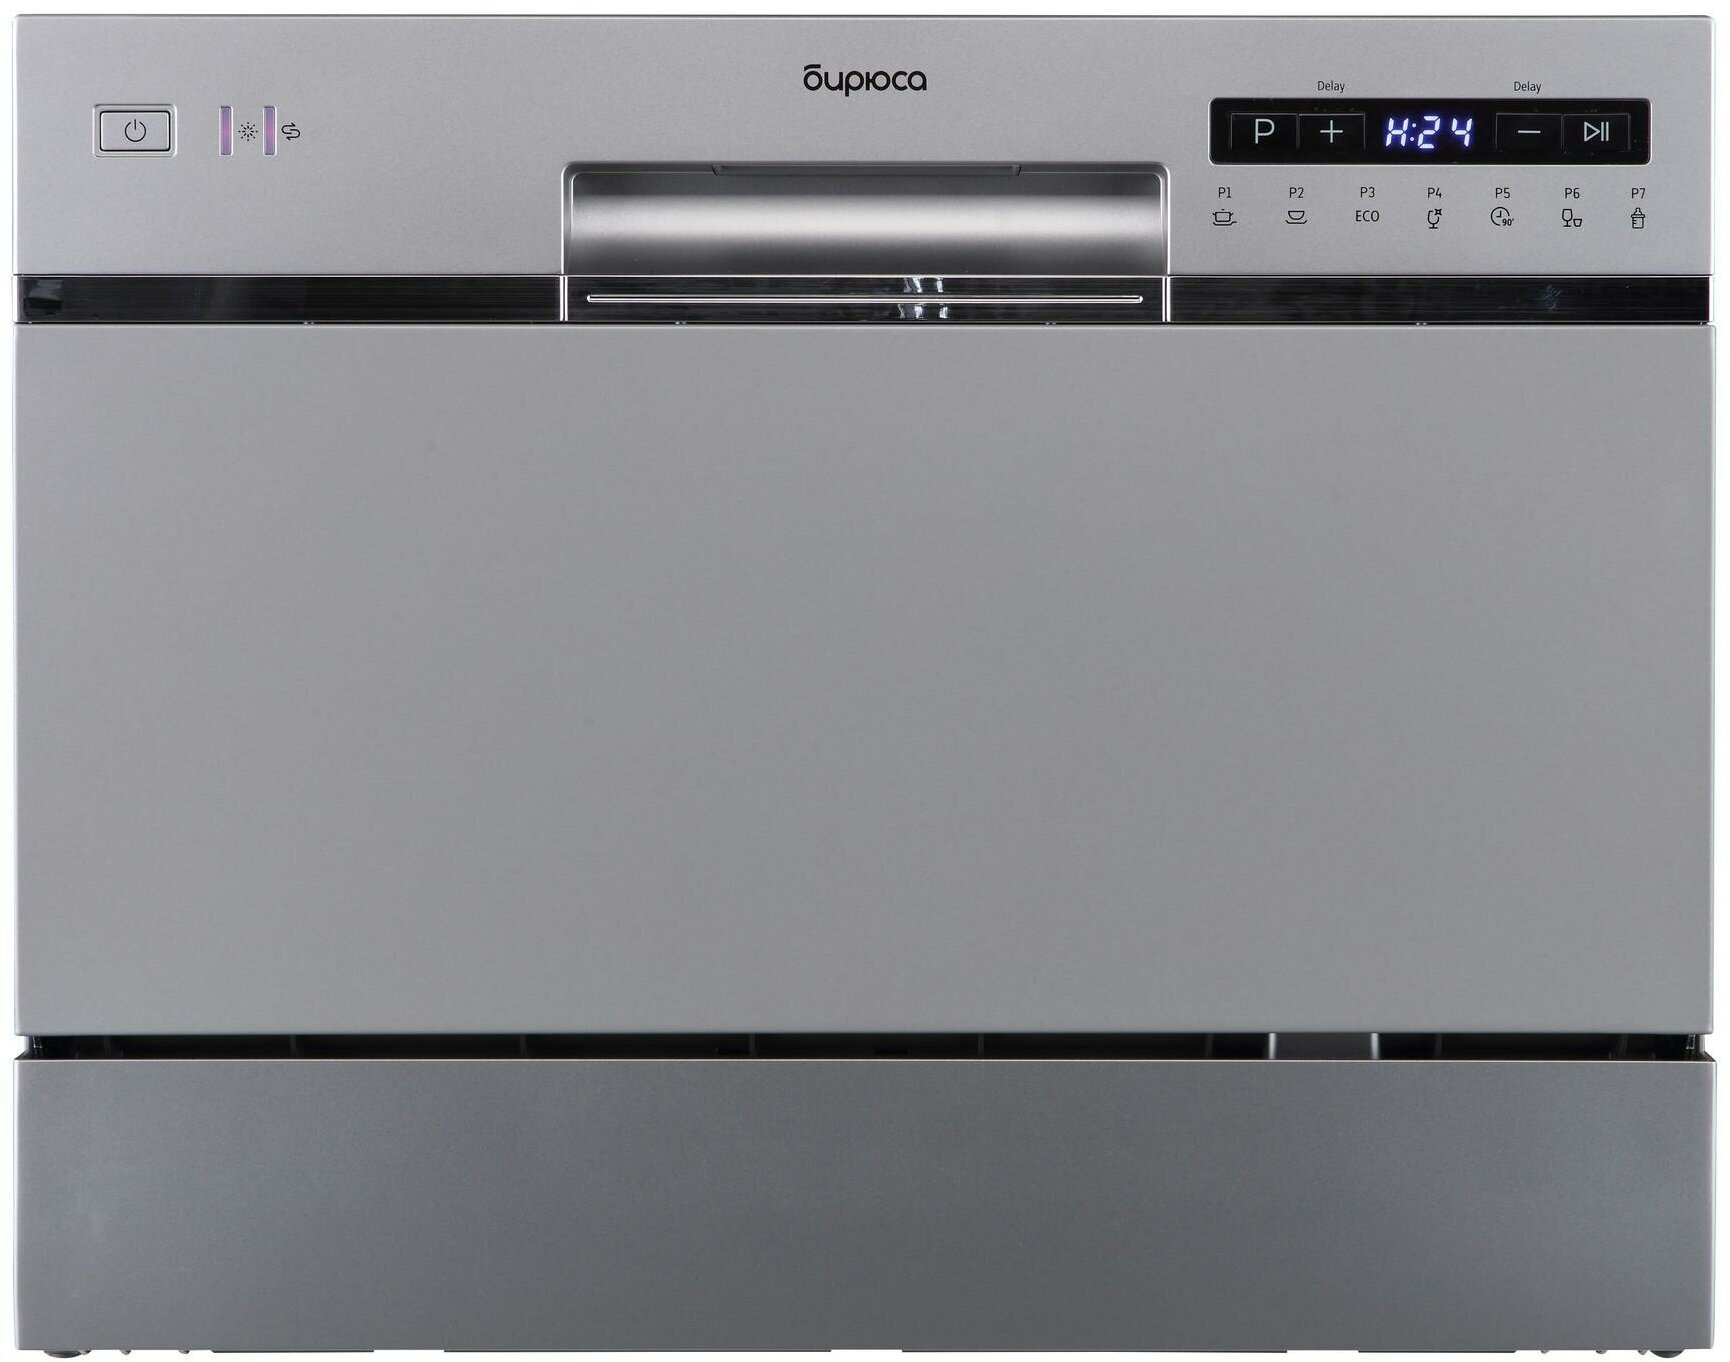 Посудомоечная машина Бирюса DWC-506/7 M серебристый